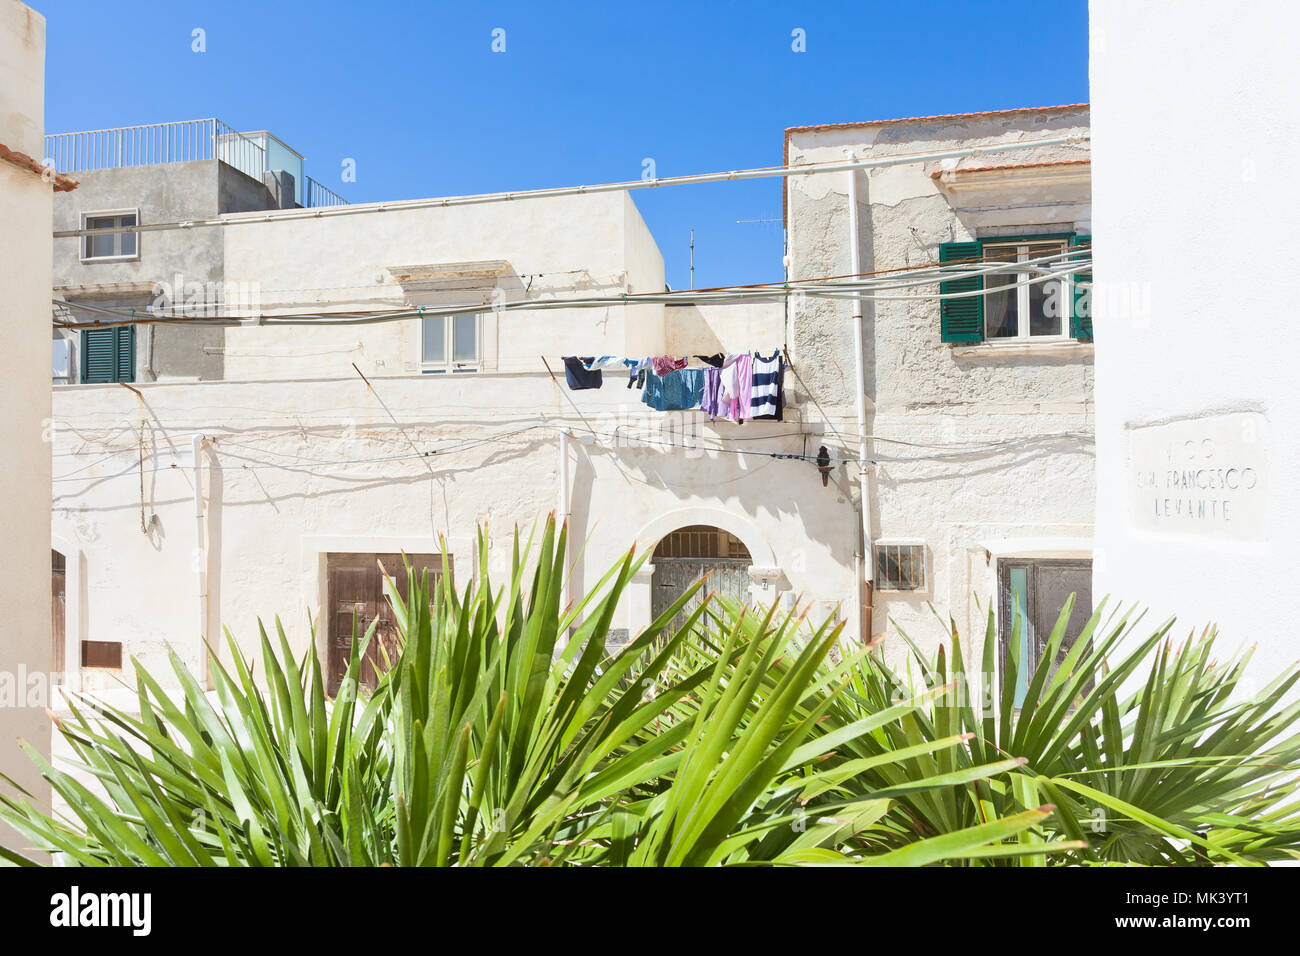 Vieste, Apulien, Italien - Wäsche trocknen auf einem Balkon in den Straßen von Vieste Stockfoto